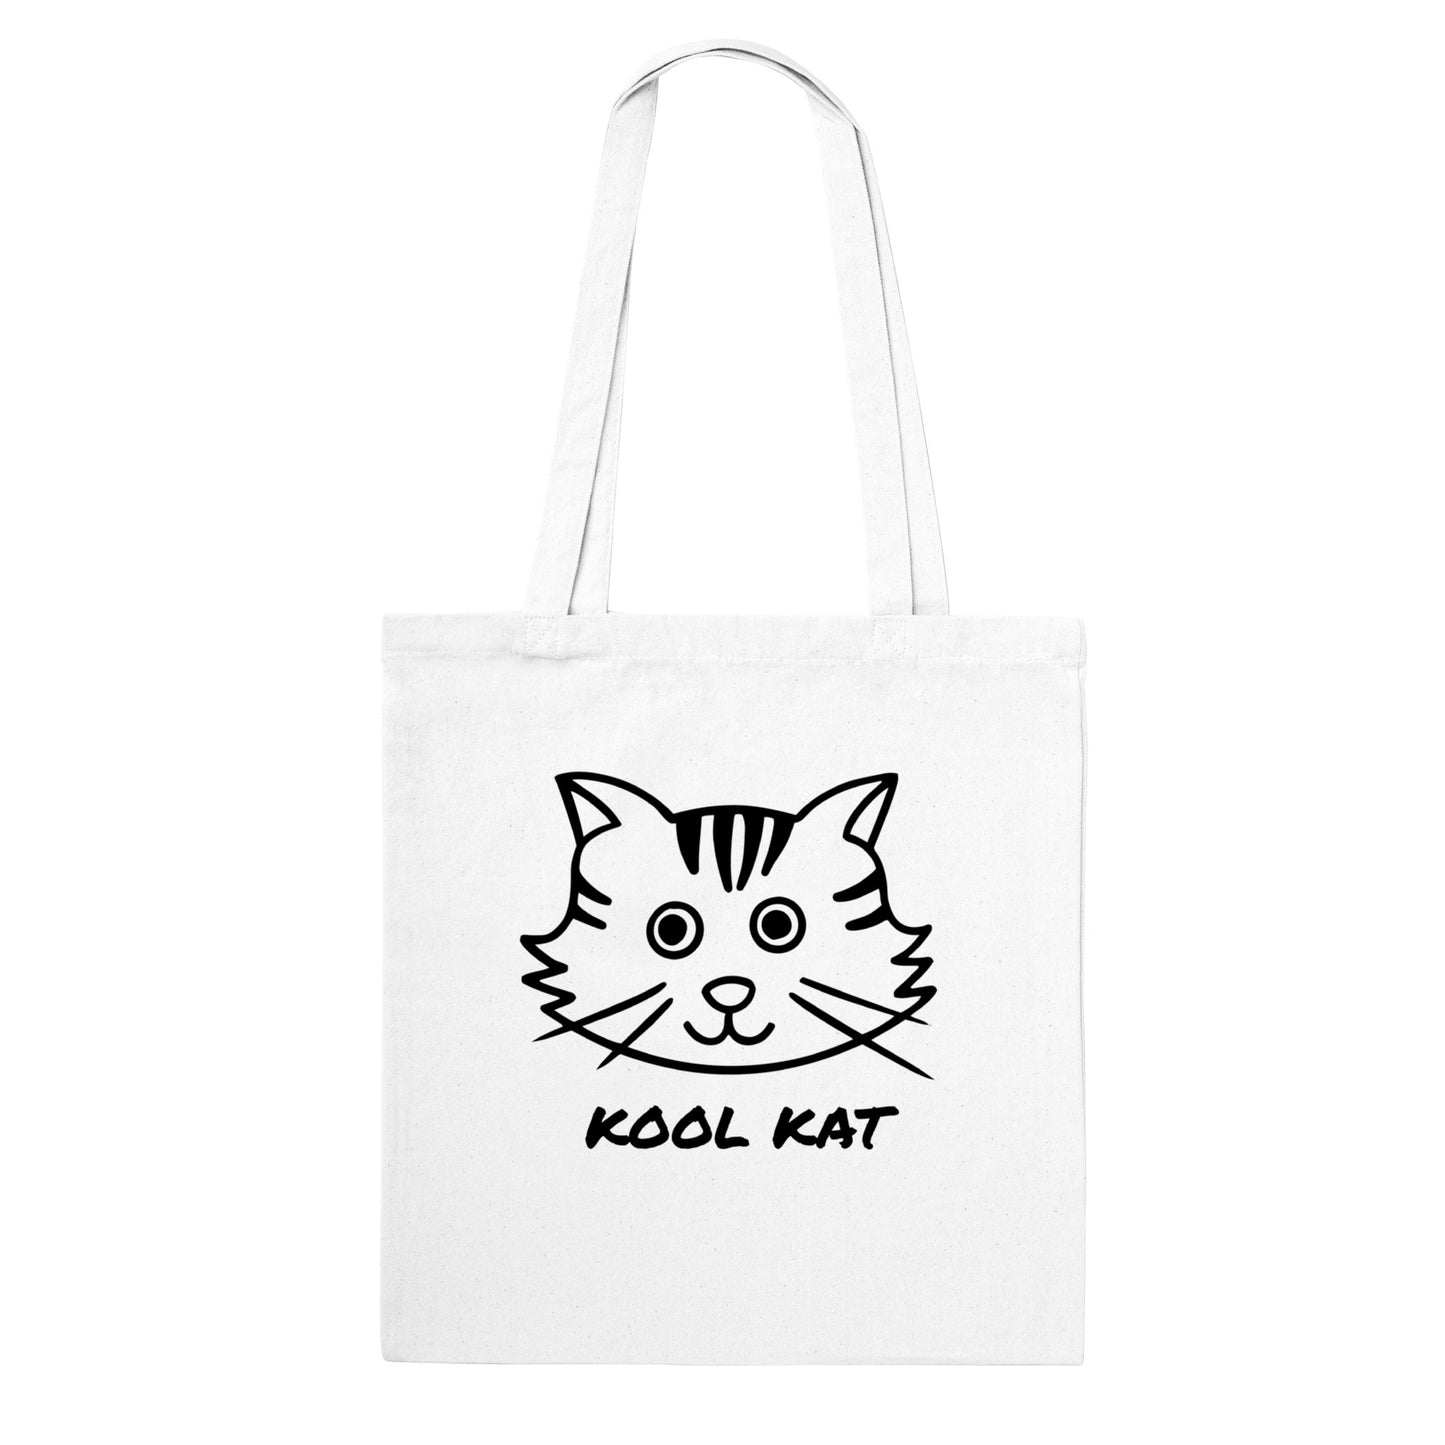 Kool Kat Classic Tote Bag